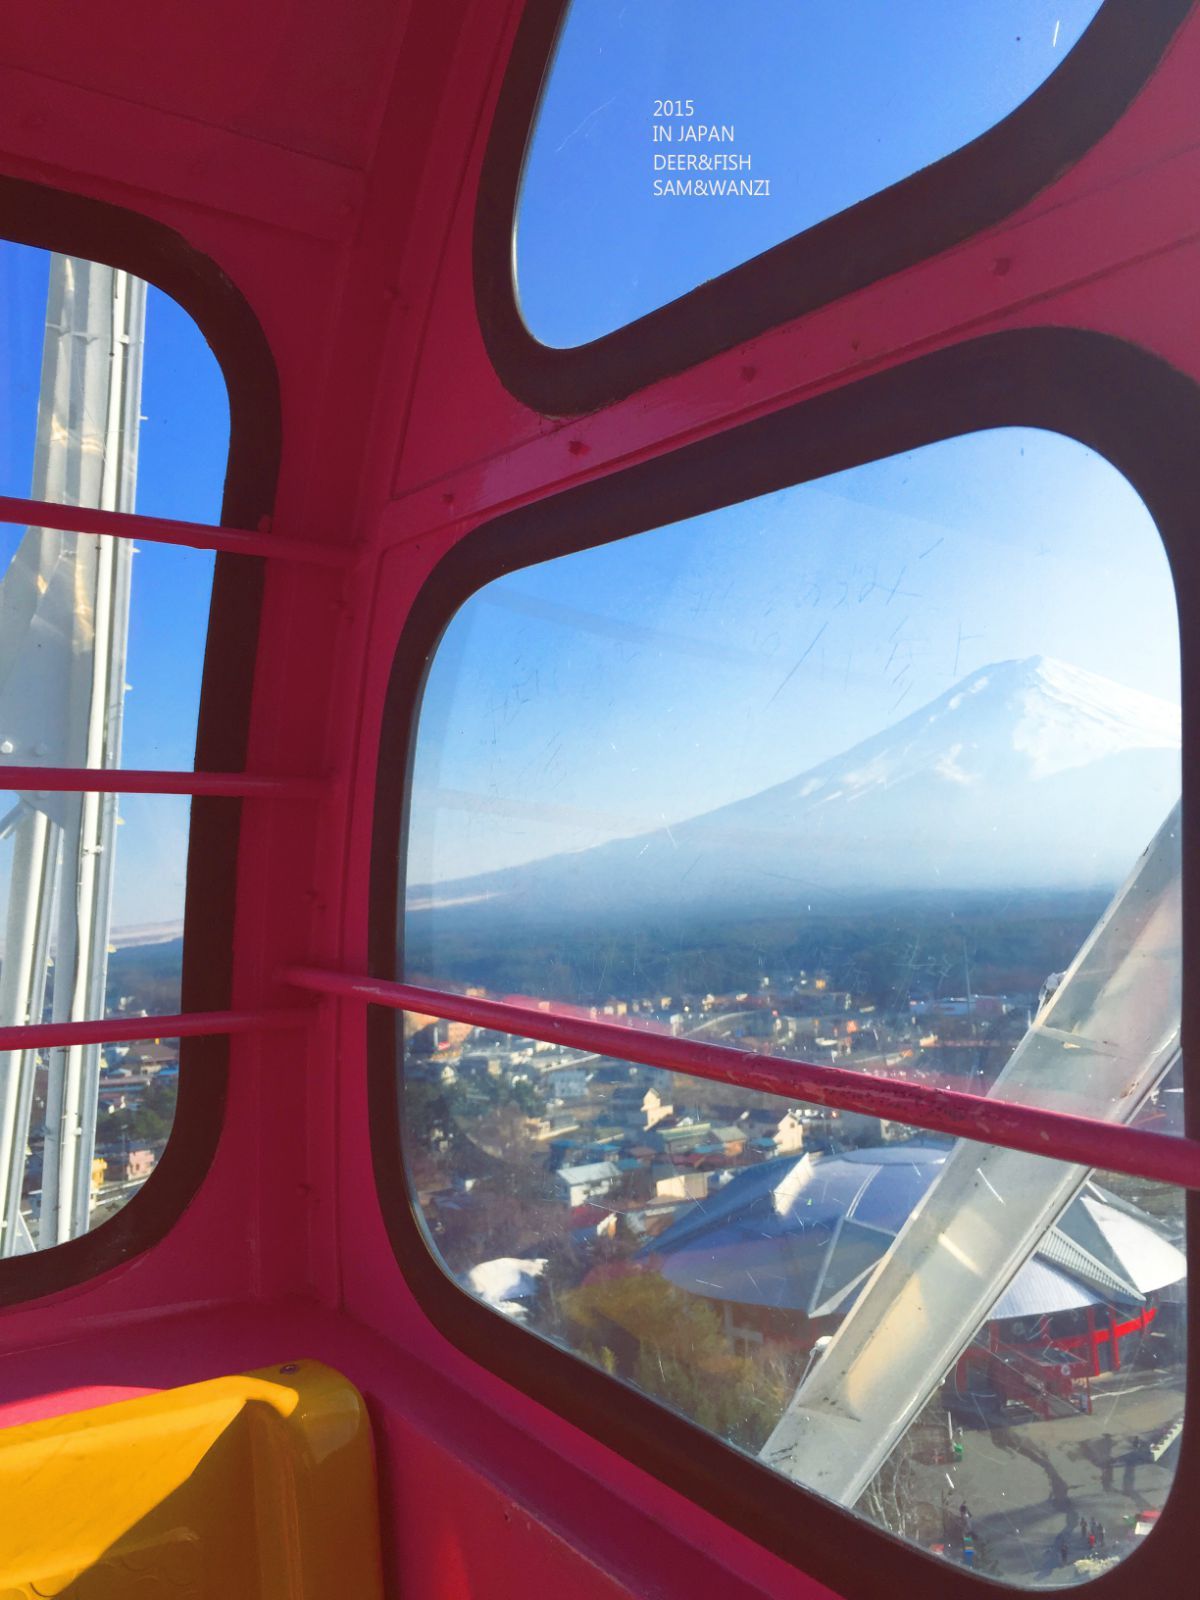 富士急摩天轮图片